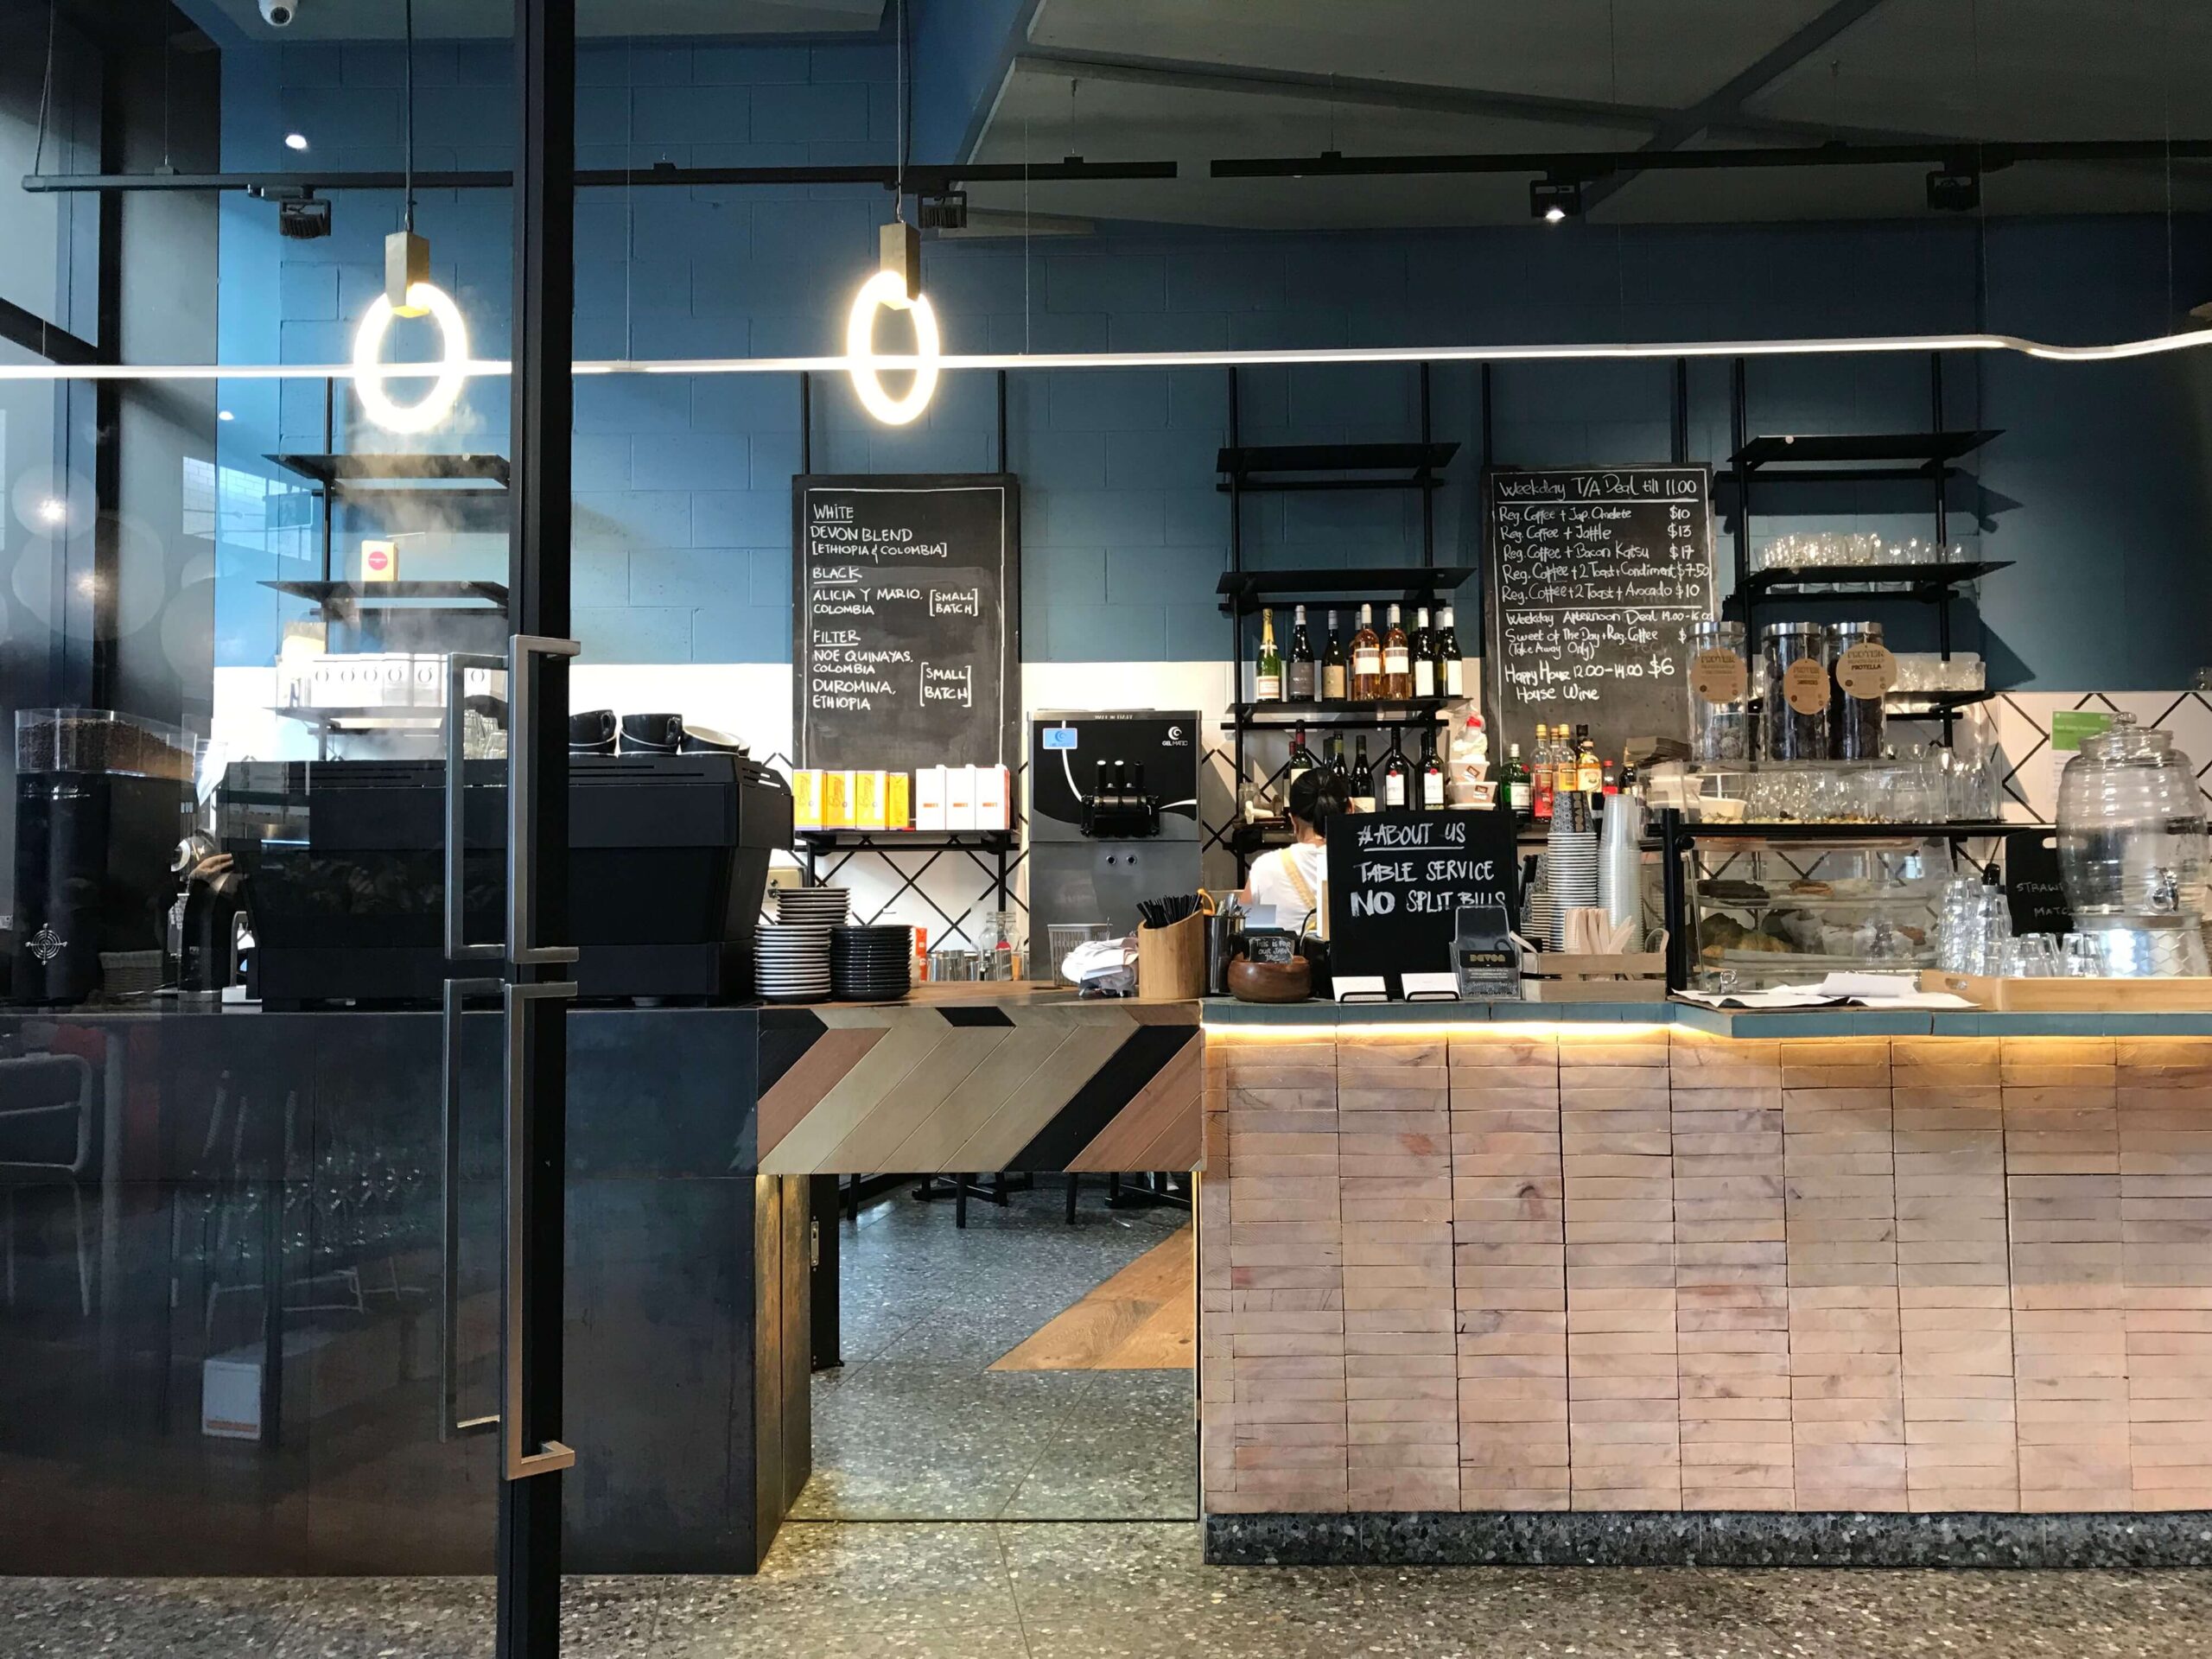 シドニーのカフェ【DEVON CAFE】の店内の様子を撮影した写真